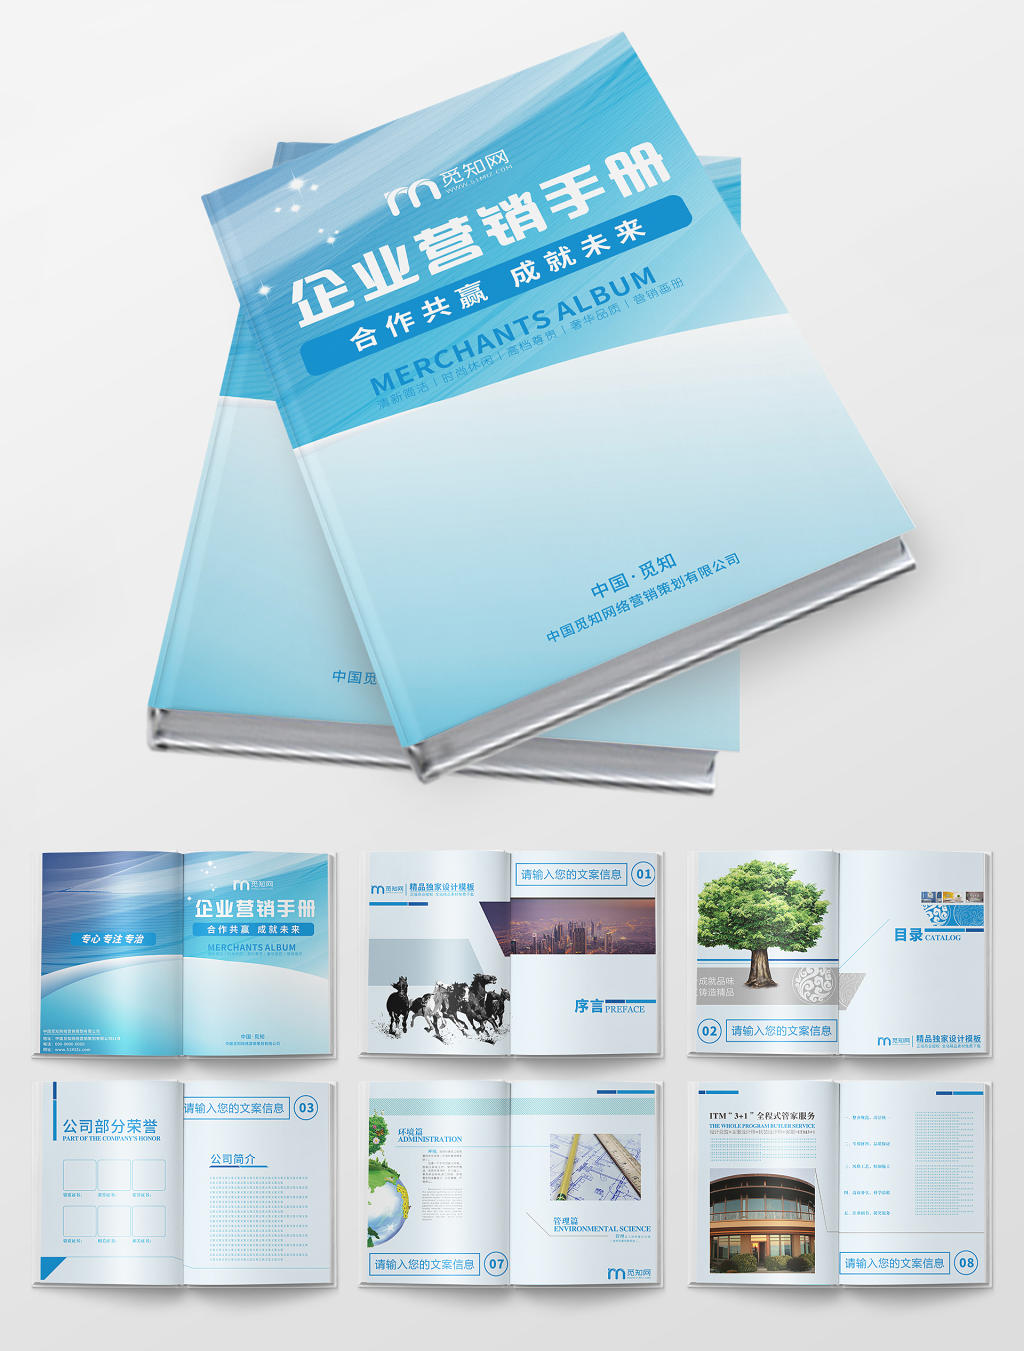 浅蓝渐变几何风格简约设计企业营销手册公司品牌宣传画册封面